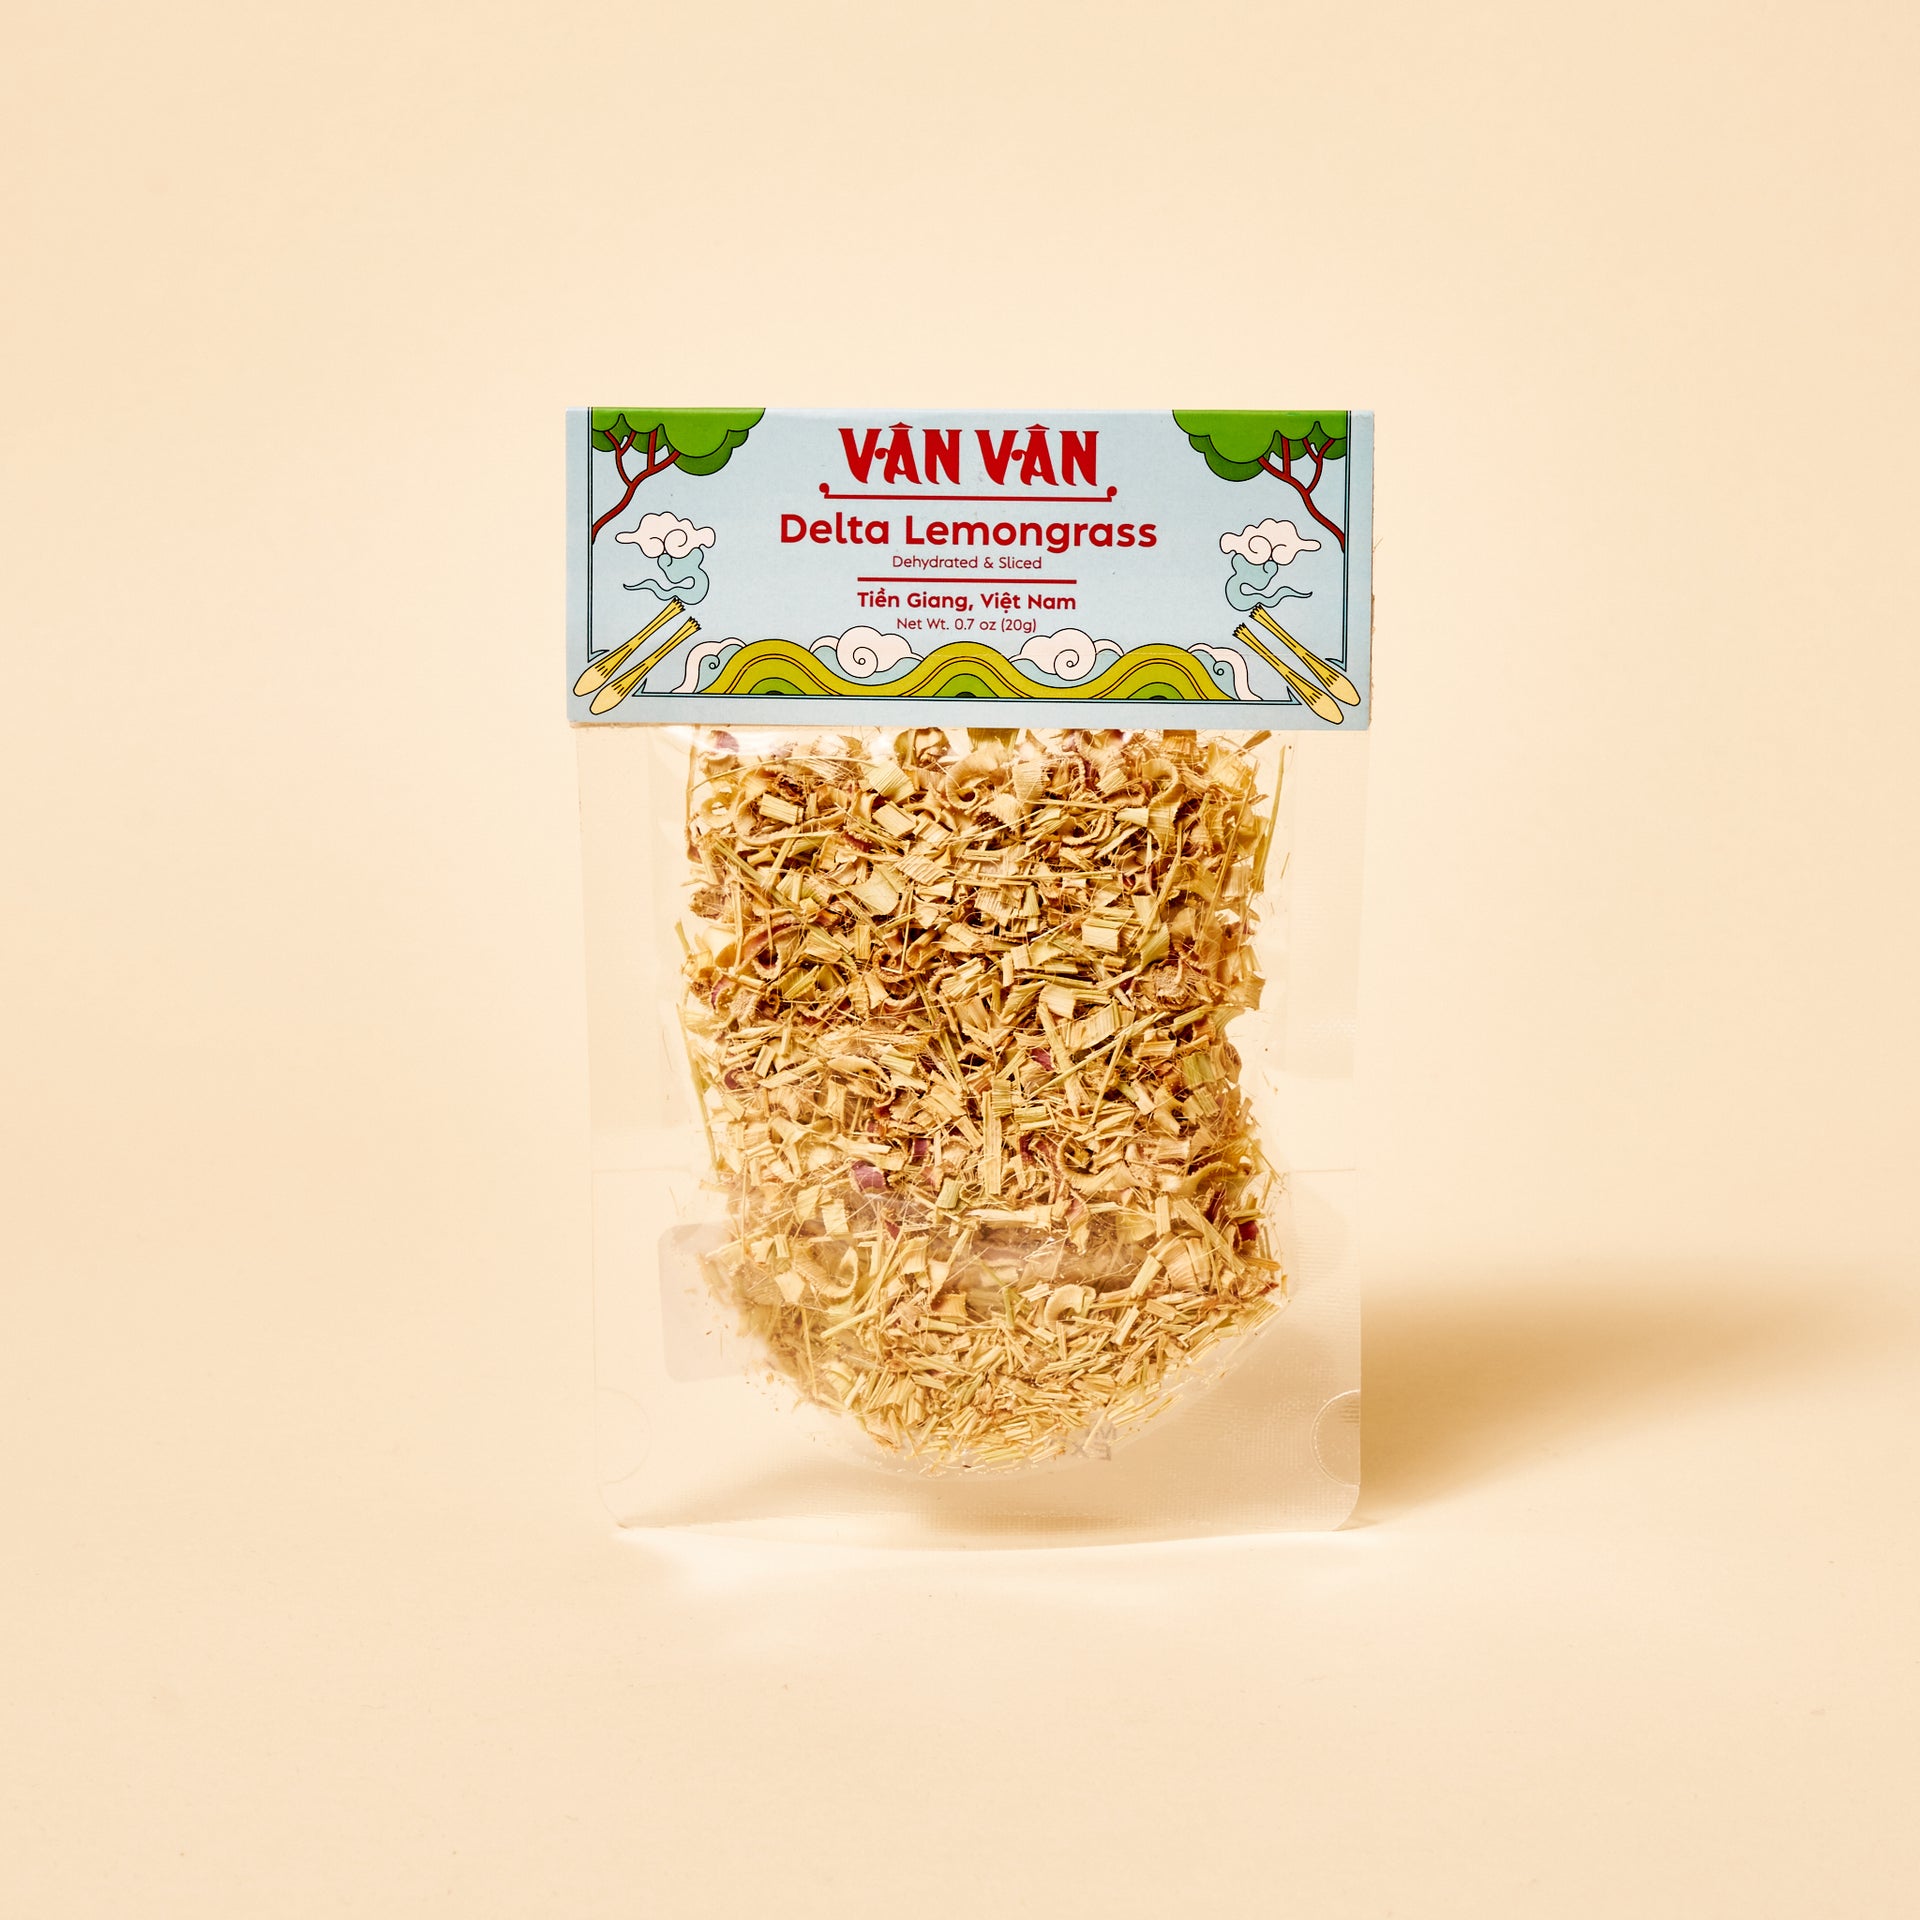 Van Van Spice Packs